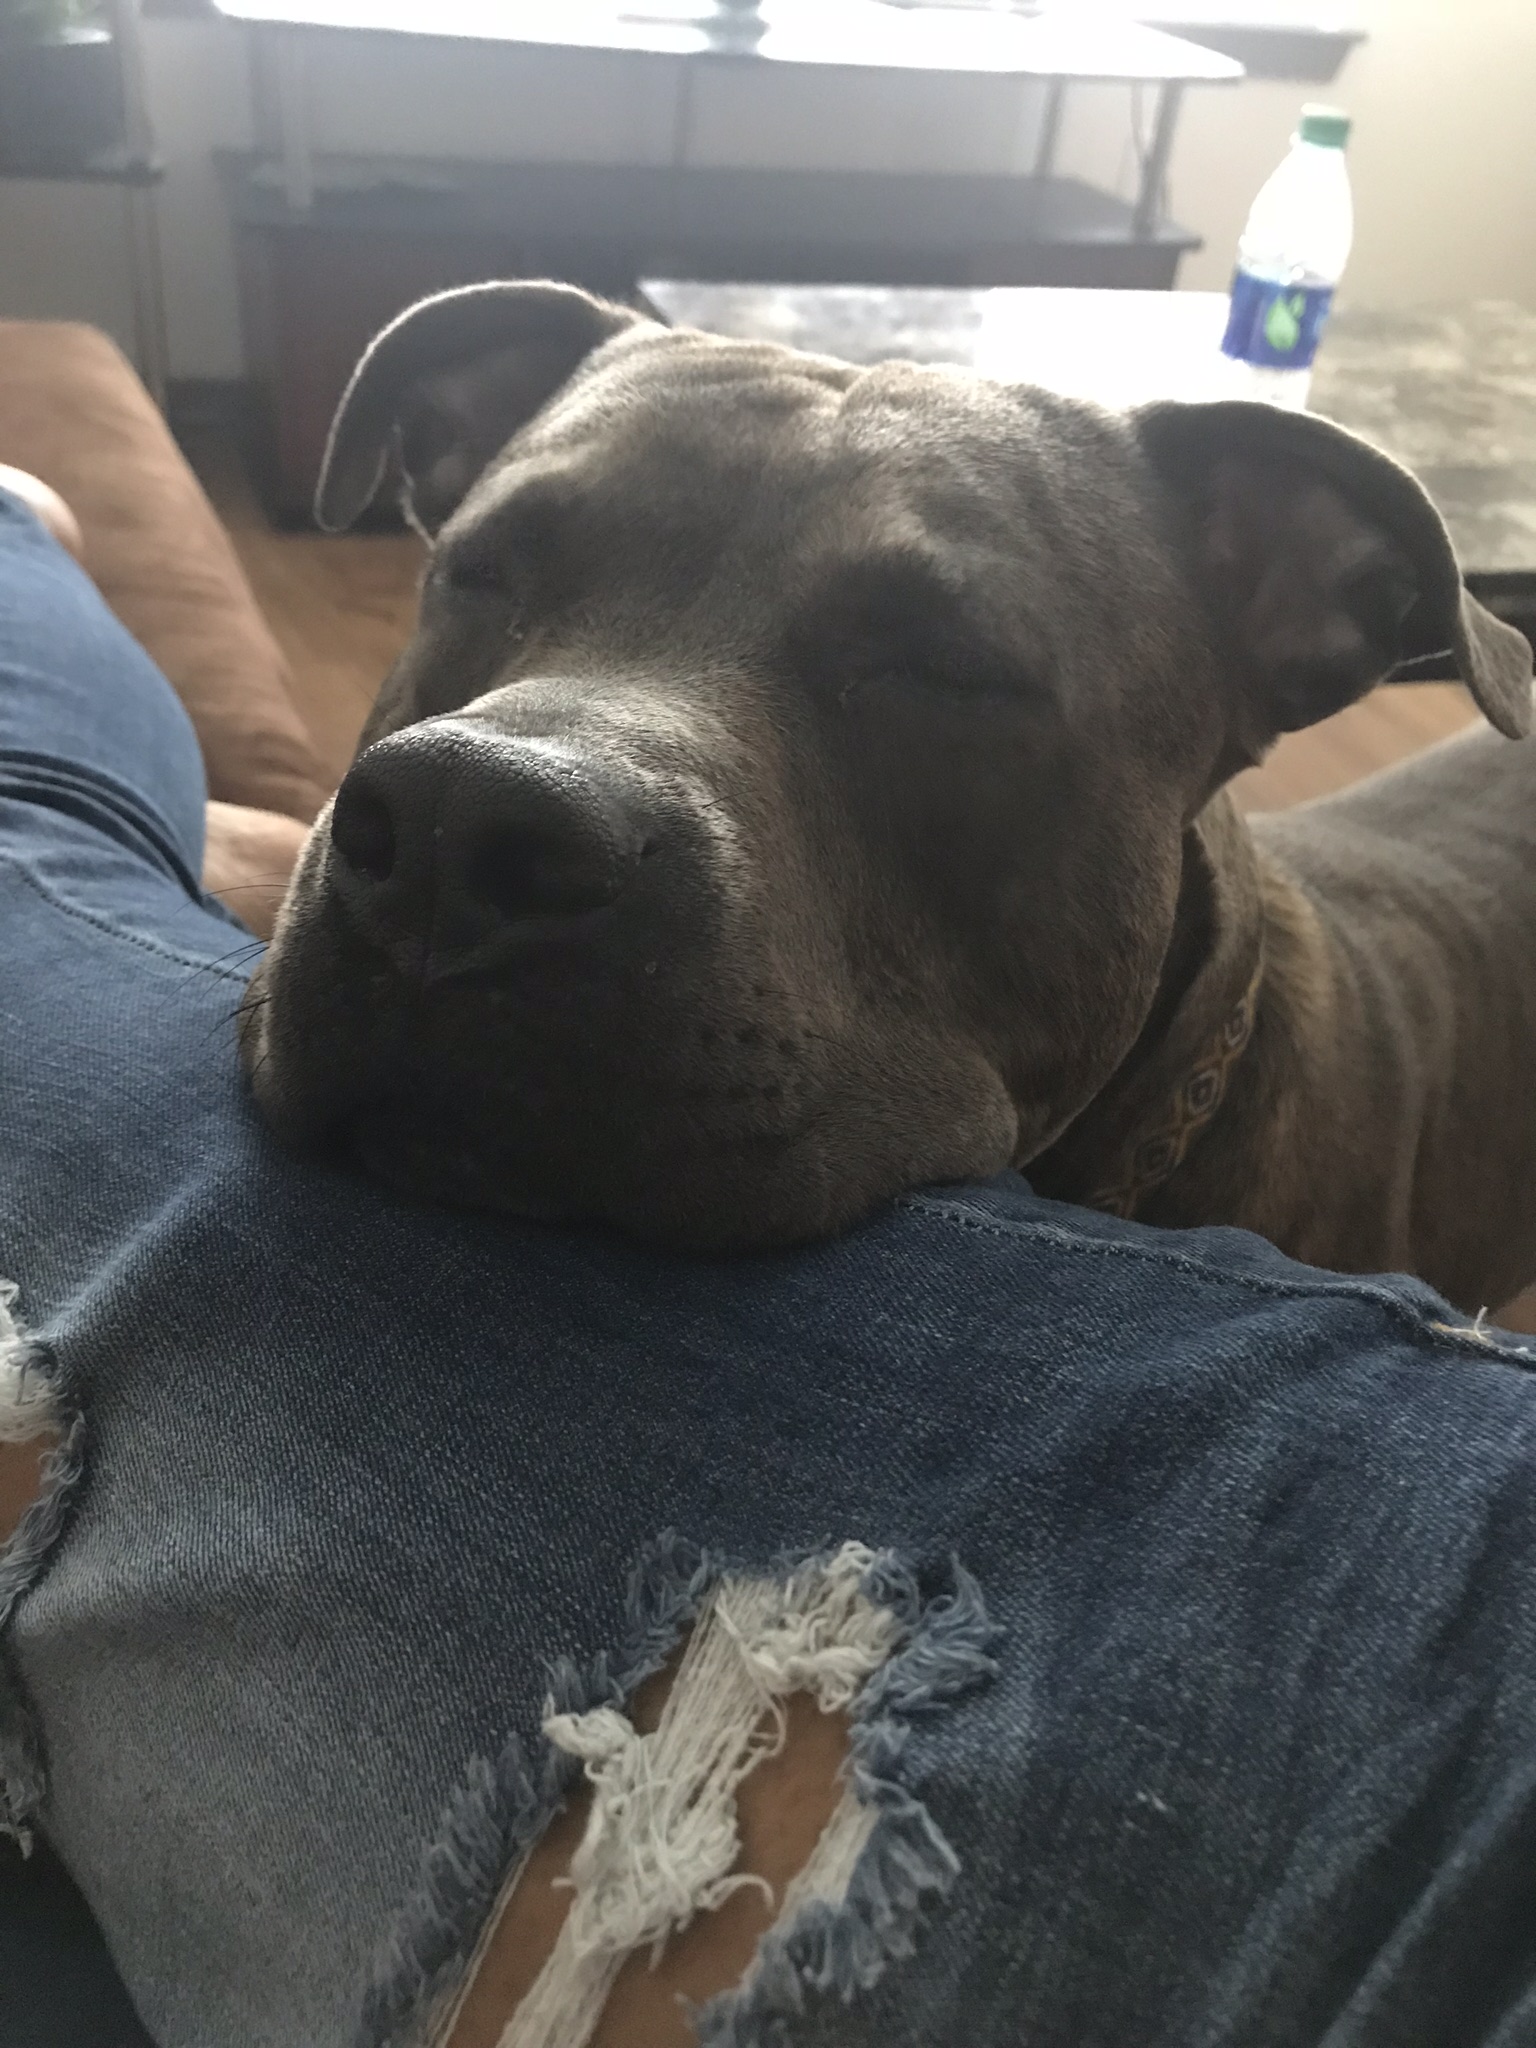 adoptable Dog in Dallas,GA named Cola